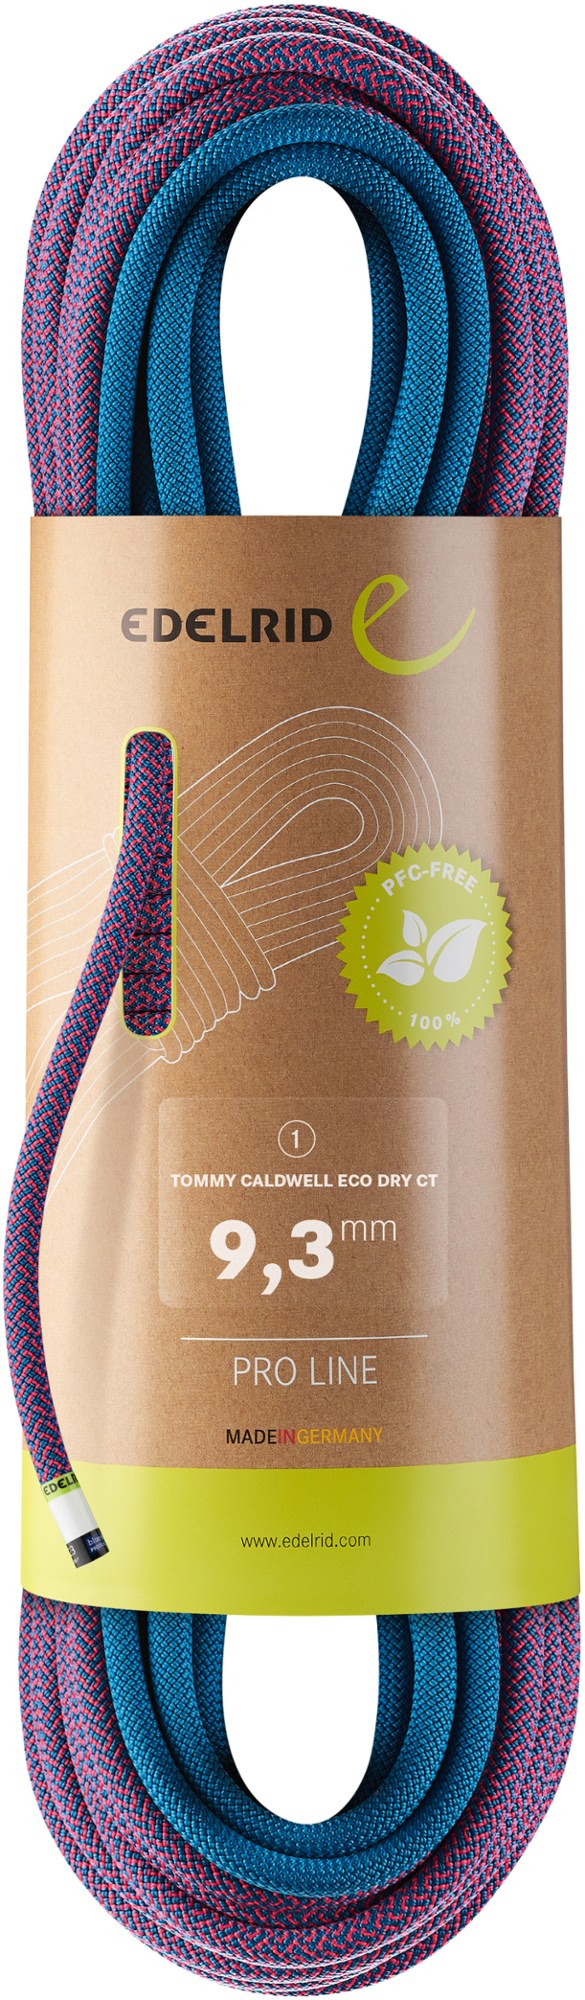 Веревка Tommy Caldwell Eco Dry CT 9,3 мм Edelrid, мультиколор